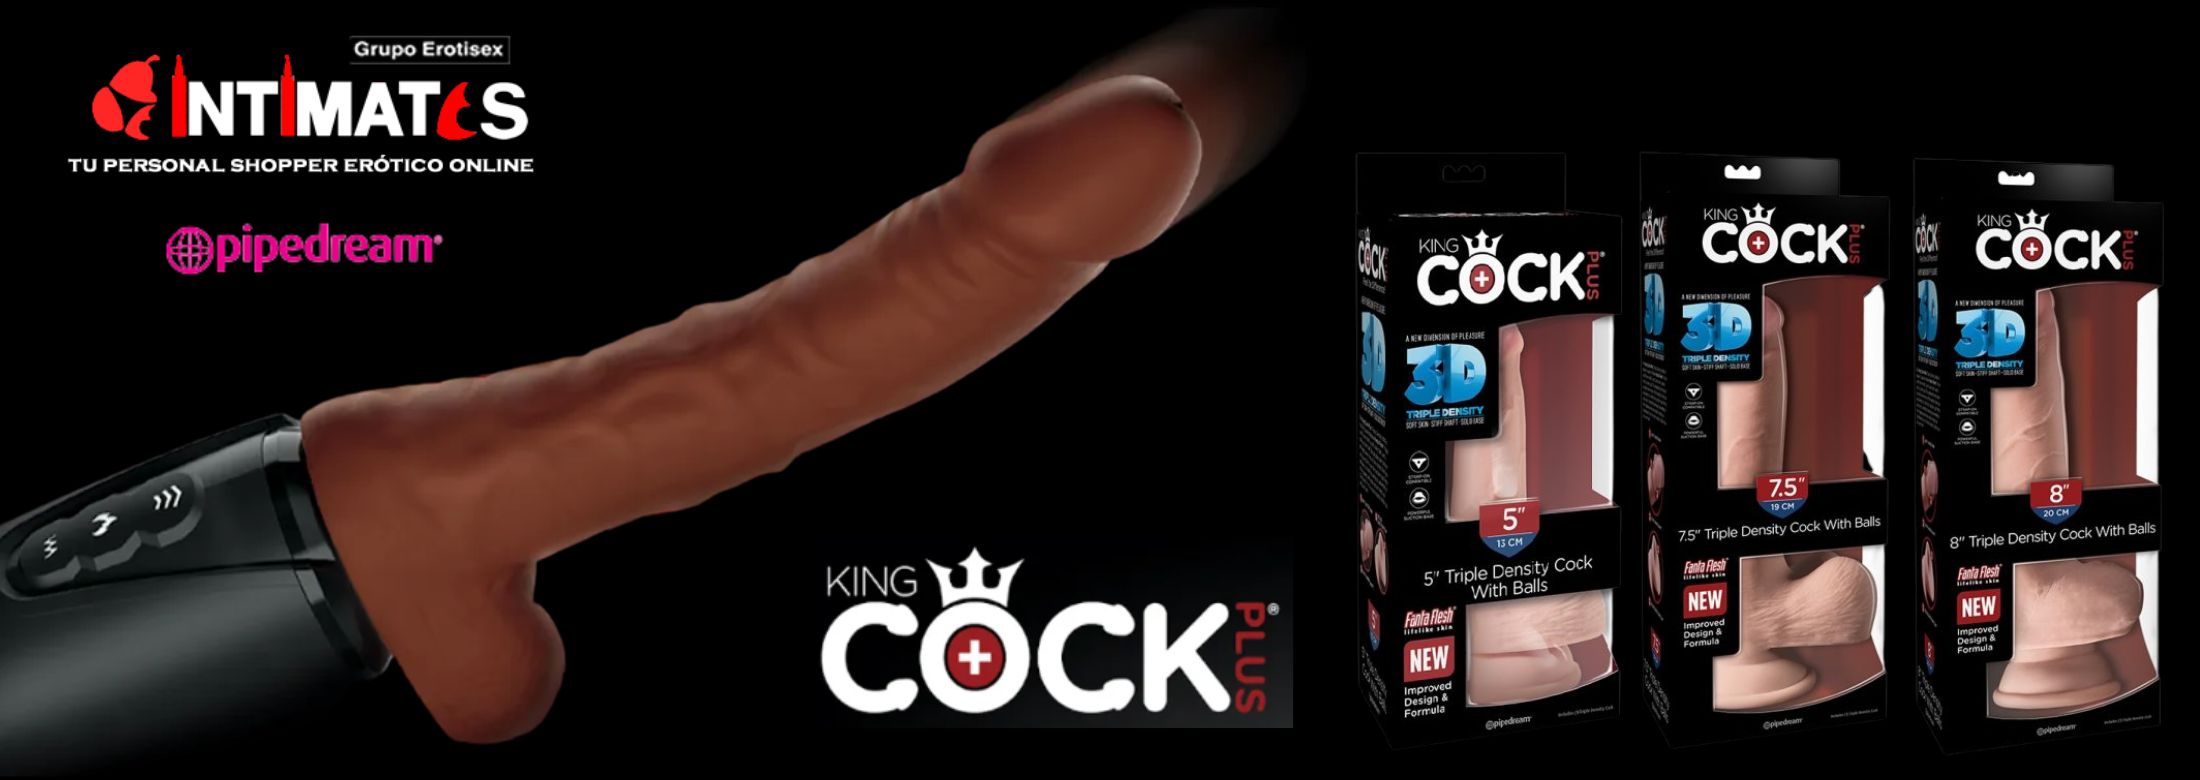 King Cock son consoladores que parecen reales, y que puedes adquirir en intimates.es "Tu Personal Shopper Erótico Online" 